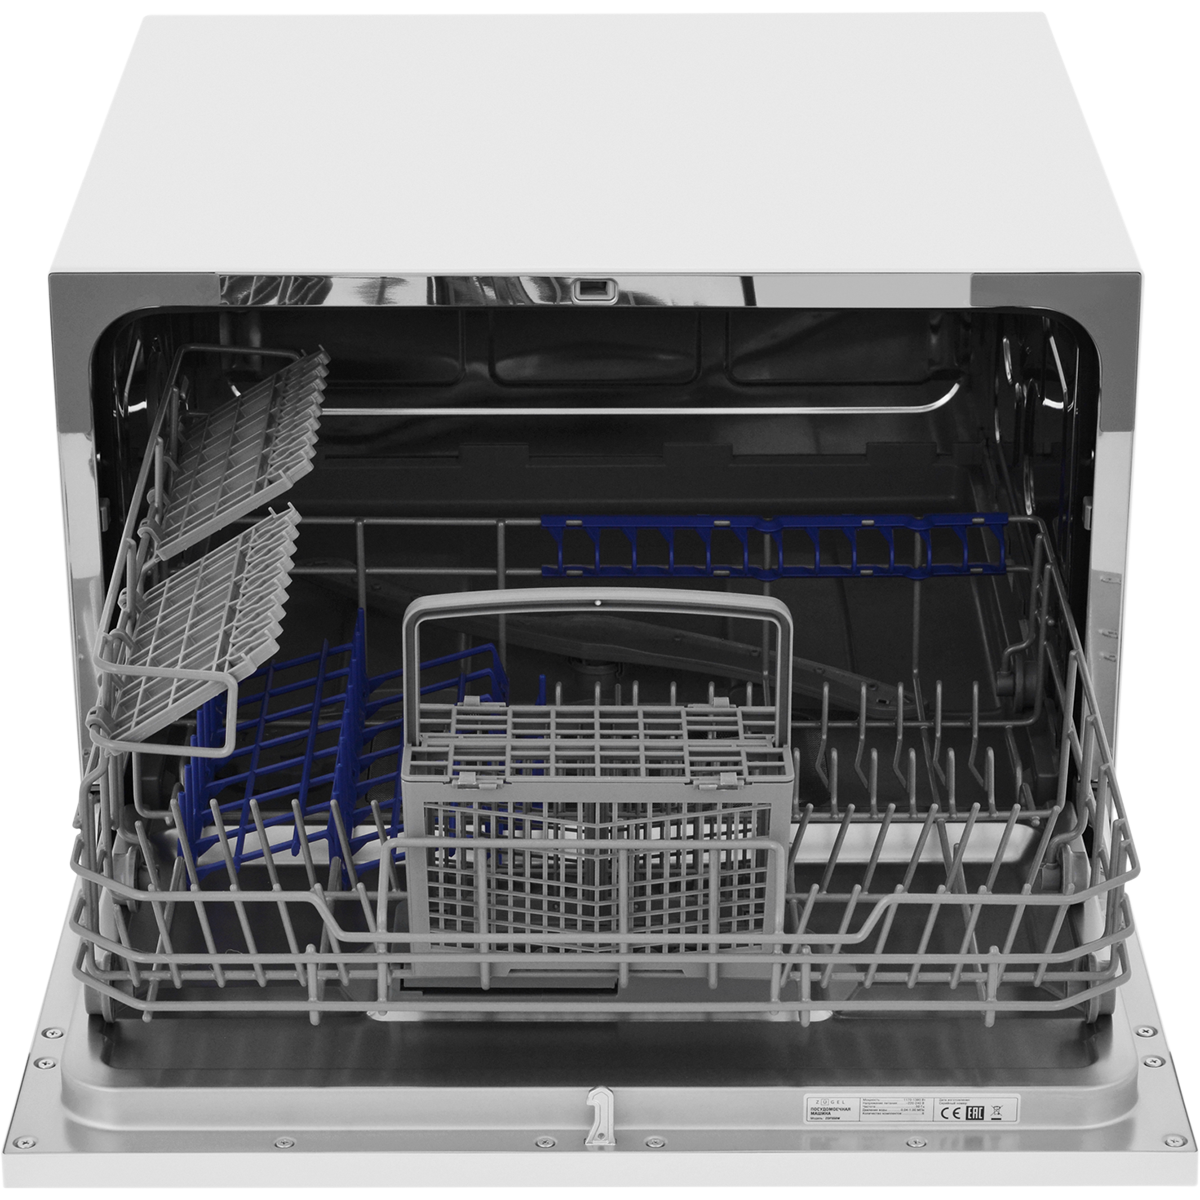 картинка Компактная посудомоечная машина ZUGEL ZDF550W, белая